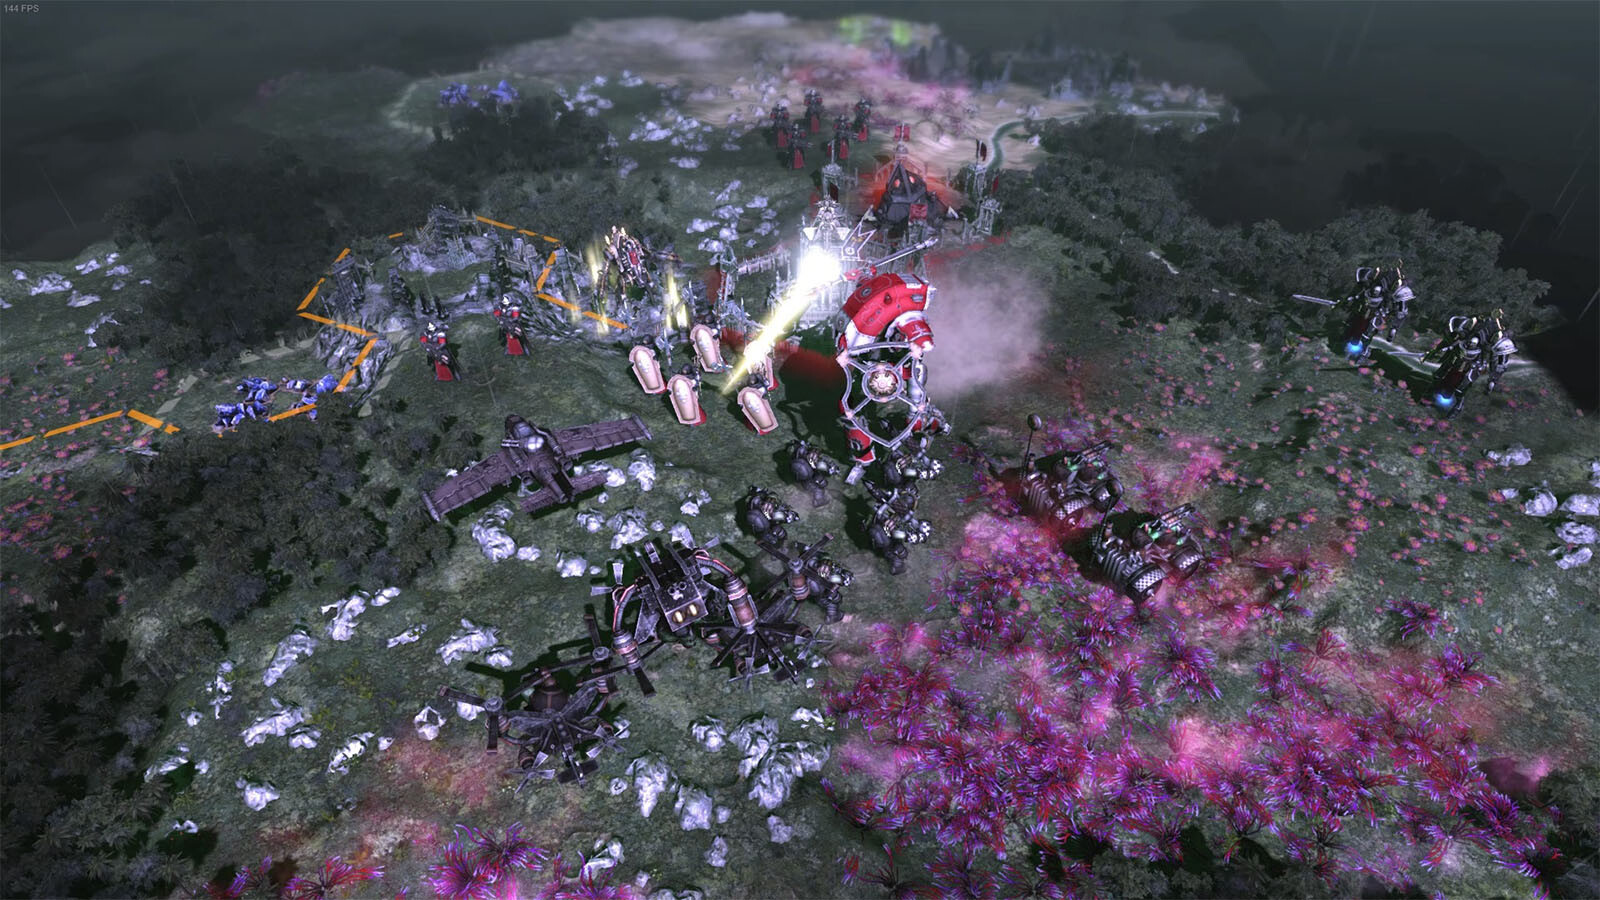 Warhammer 40,000: Gladius - Adepta Sororitas (GOG) GOG Key for PC